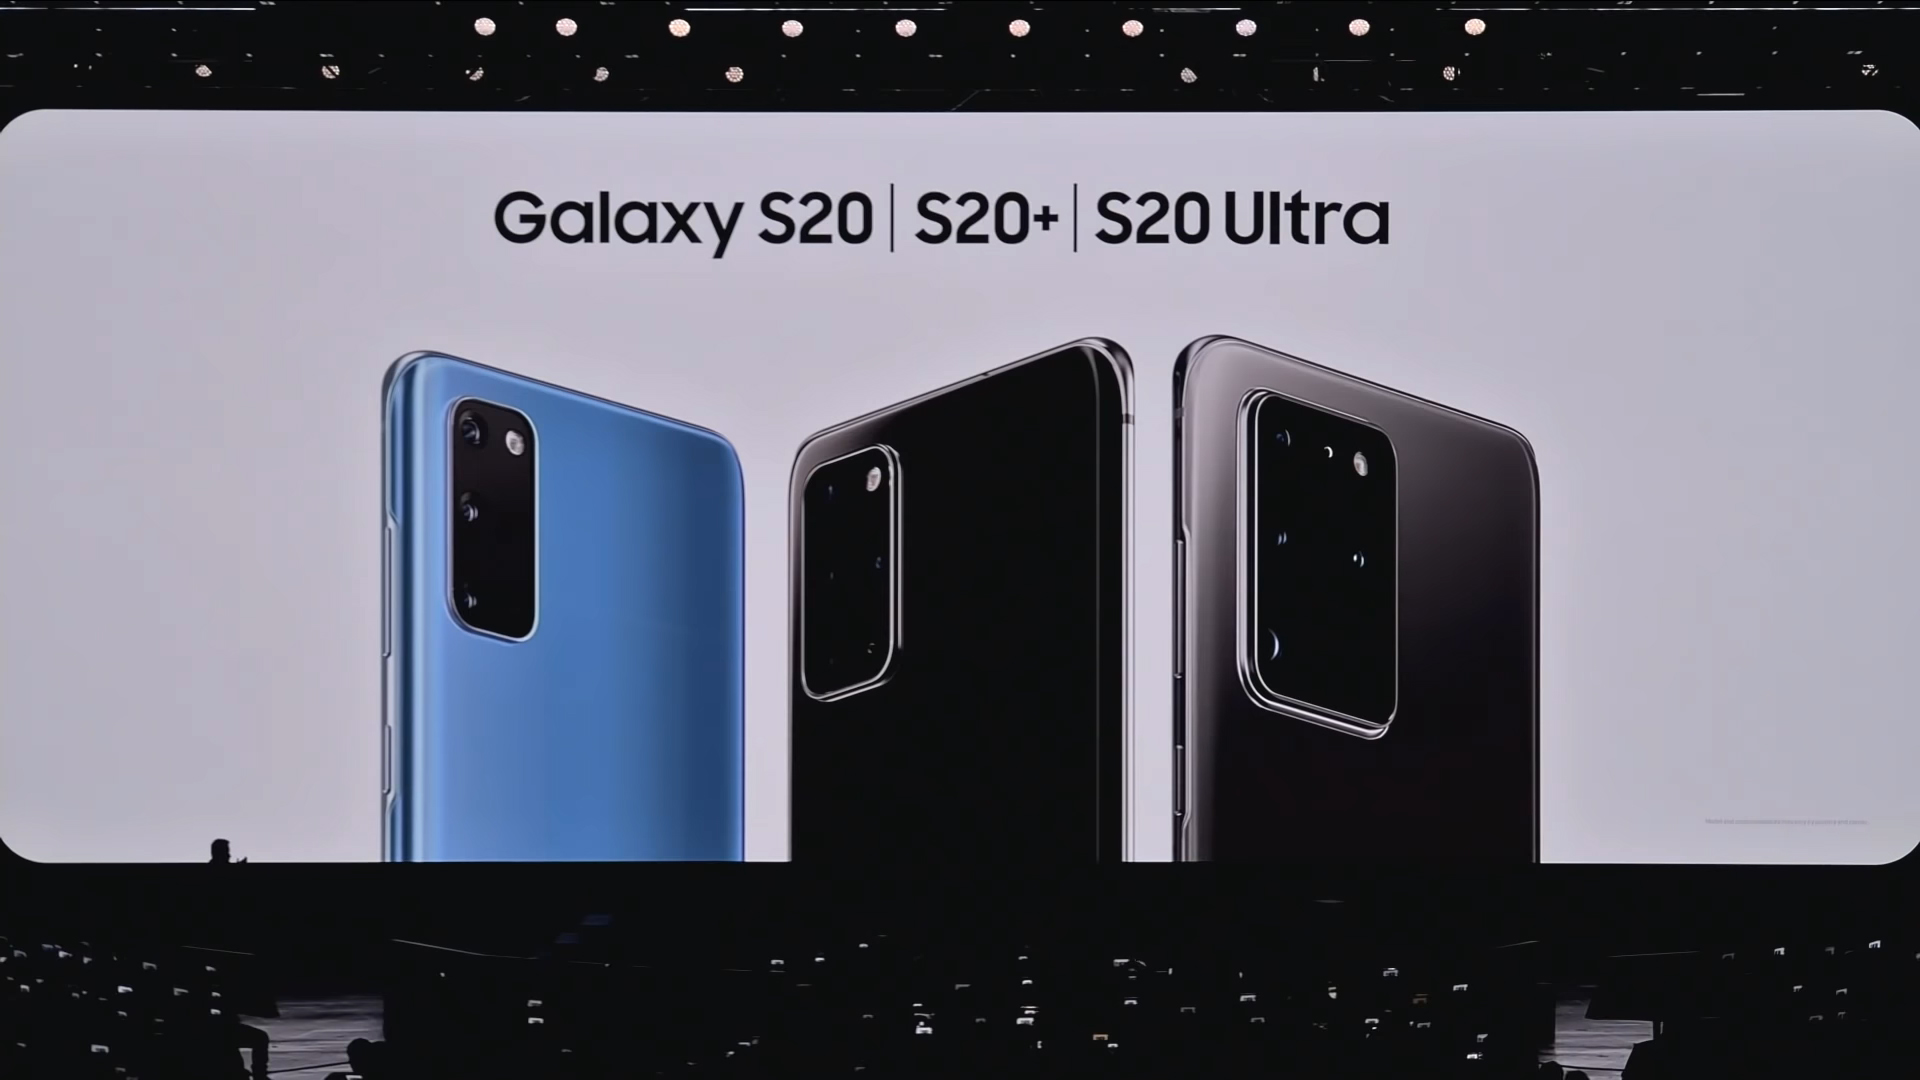 Nakon nekoliko mjeseci uobičajenog curenja informacija prije prezentacije, Samsung je sinoć na svojem događaju Unpacked! u San Franciscu predstavio nove mobitele za prvu polovicu 2020. godine.